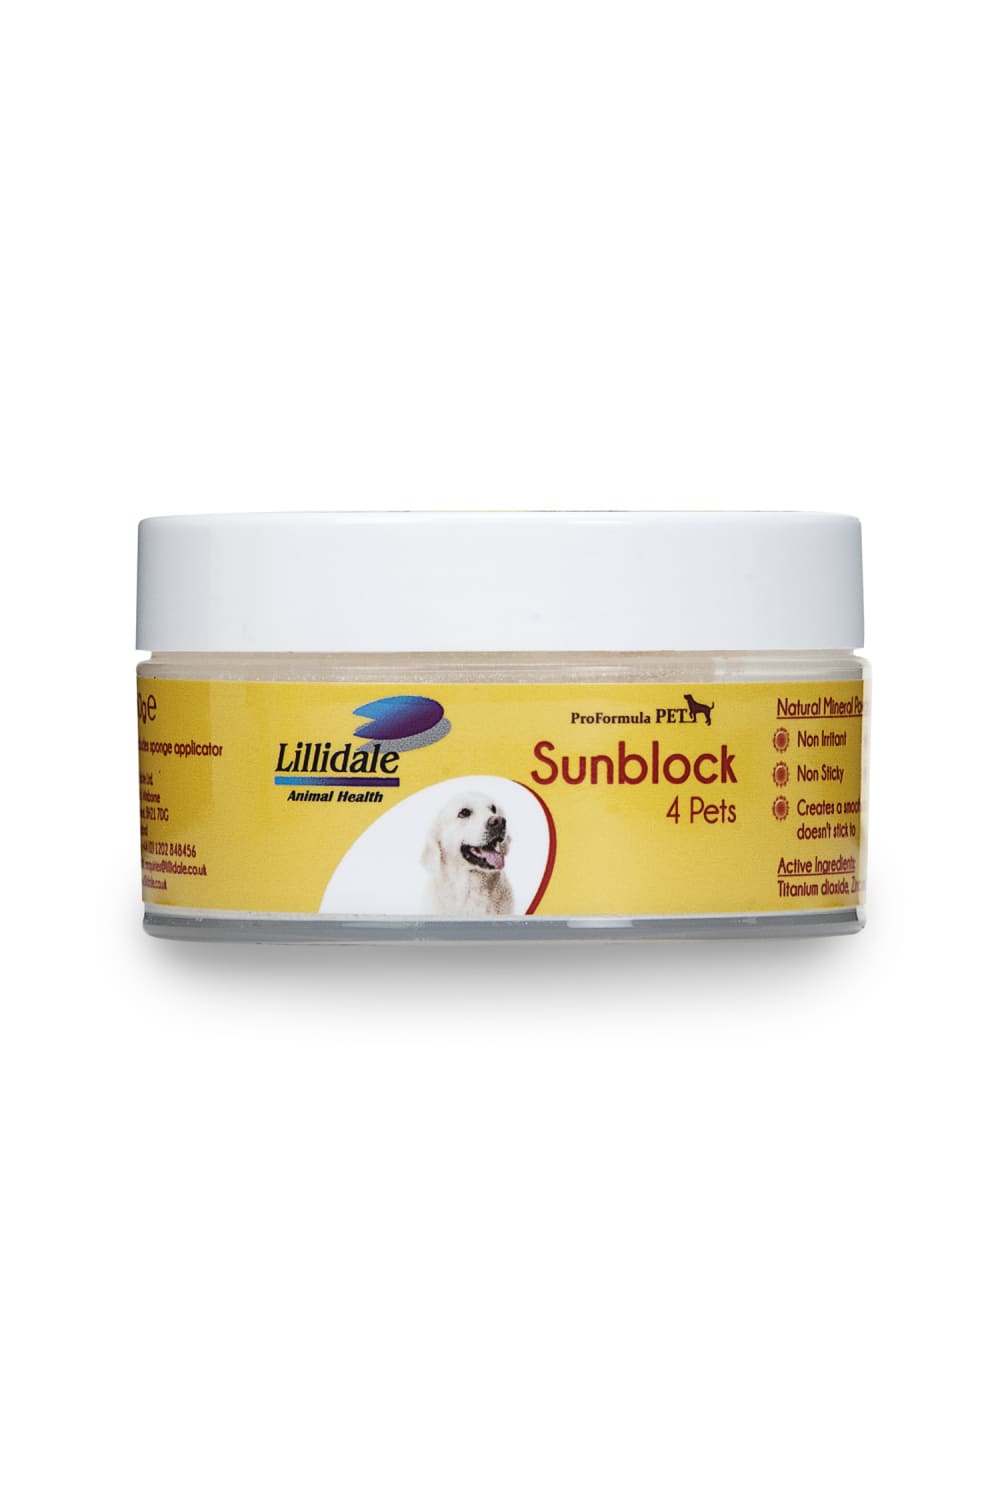 Lillidale Sunblock Powder 4 Pets (May Vary) (1.7 oz)